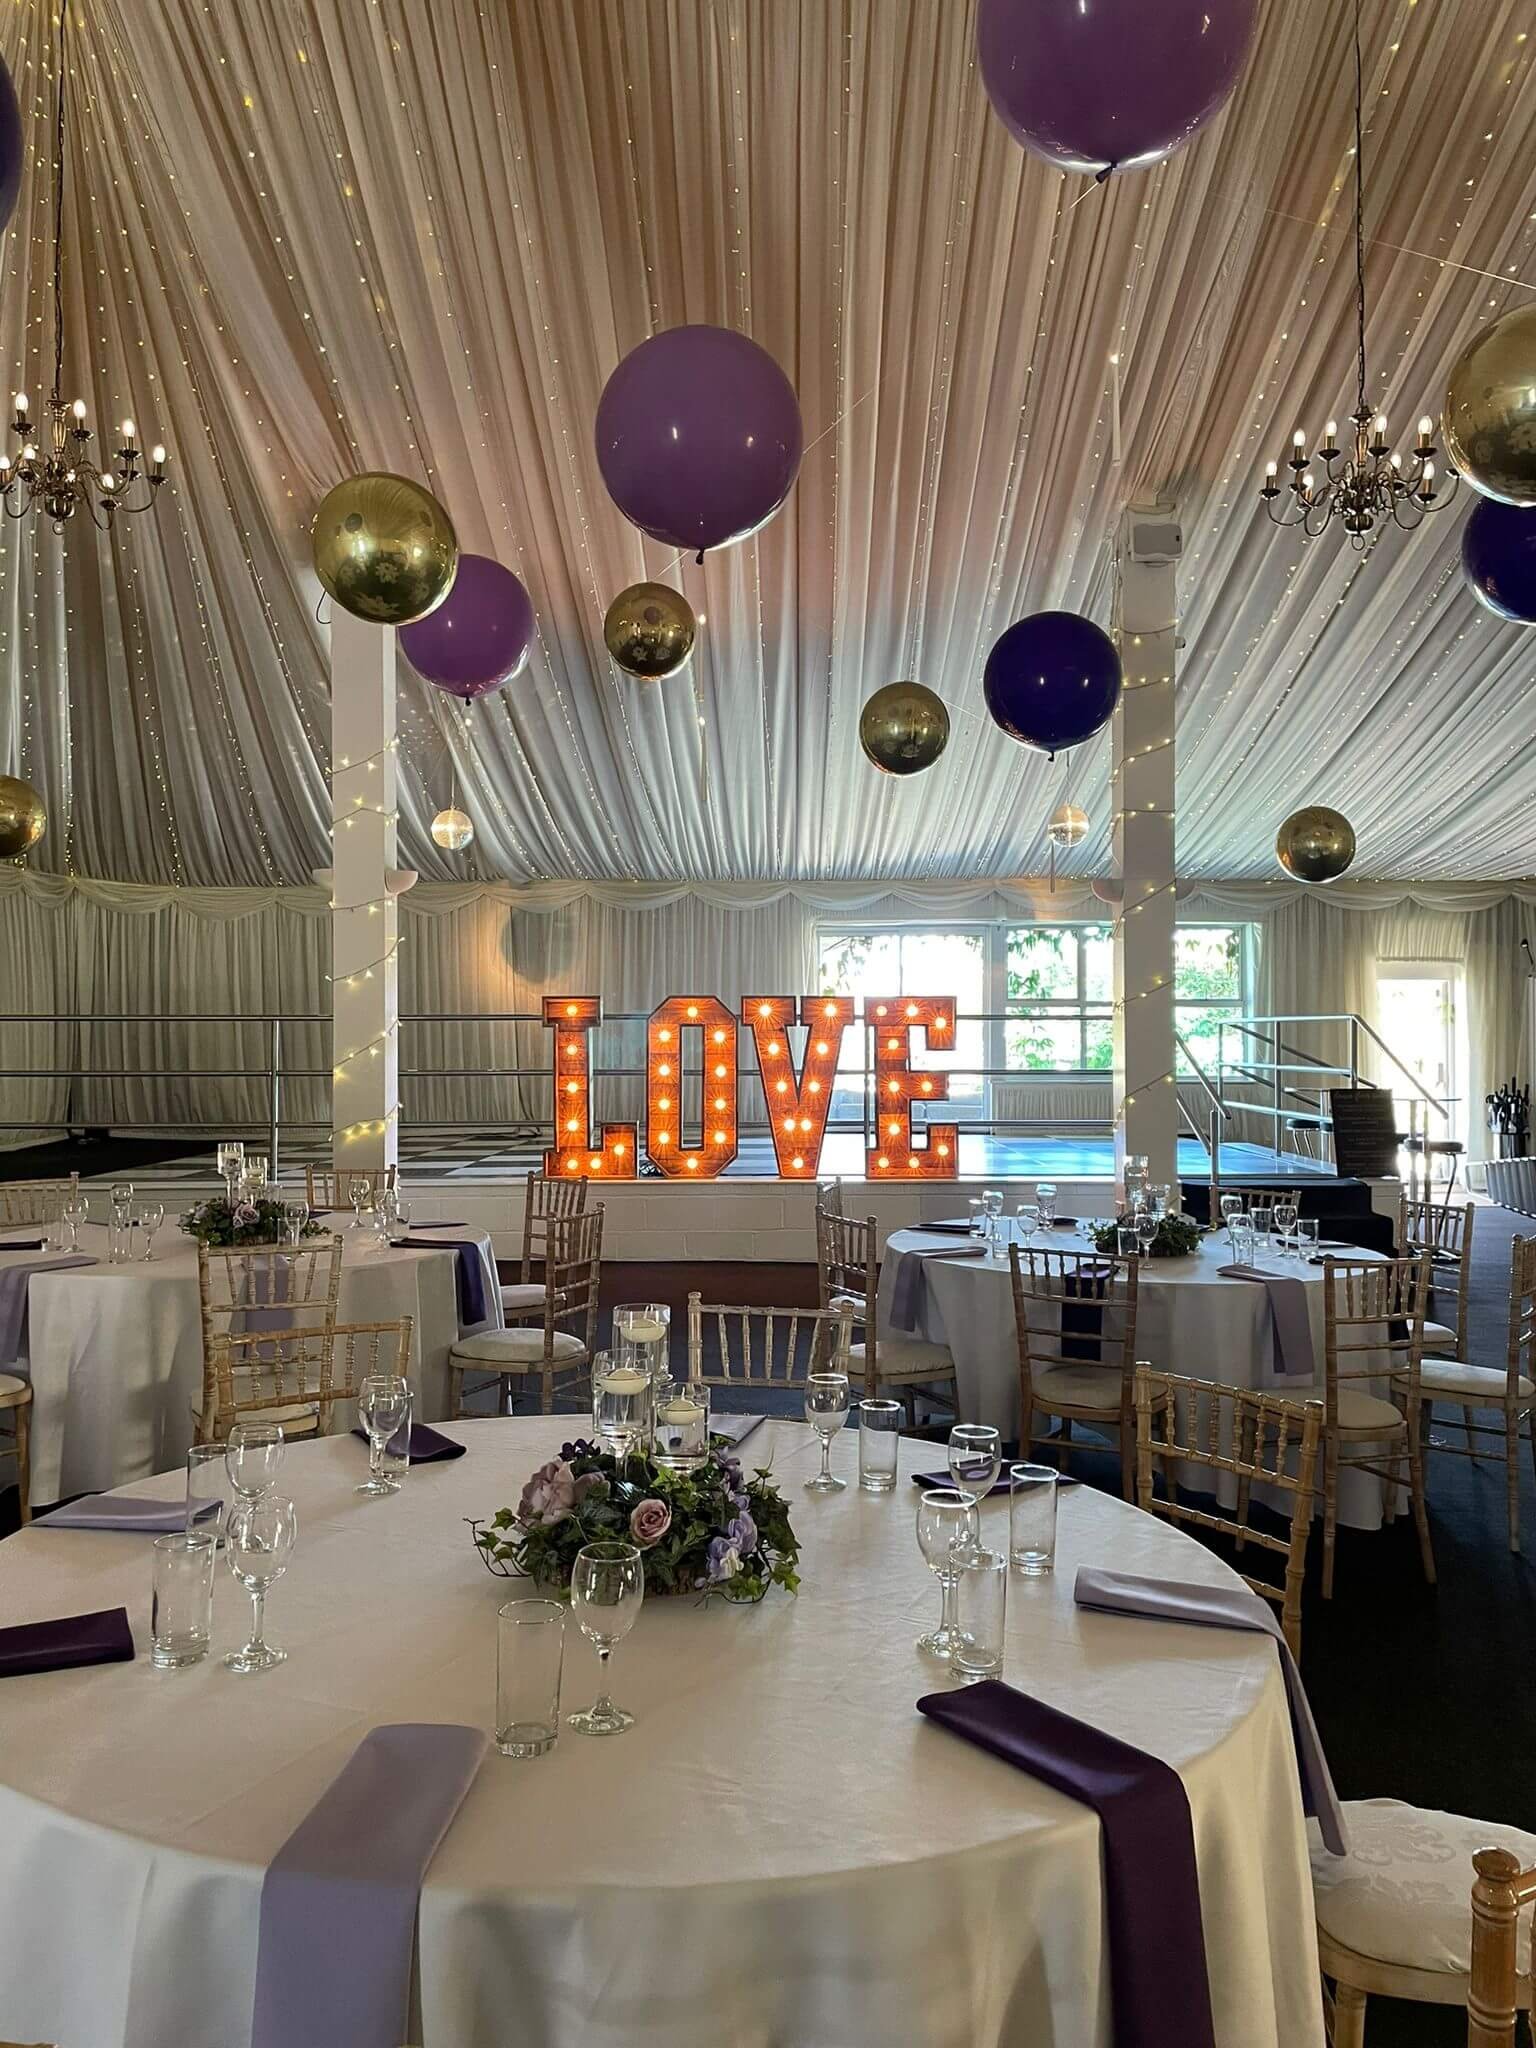 Selden_barns_wedding_ceiling_Balloons.jpg